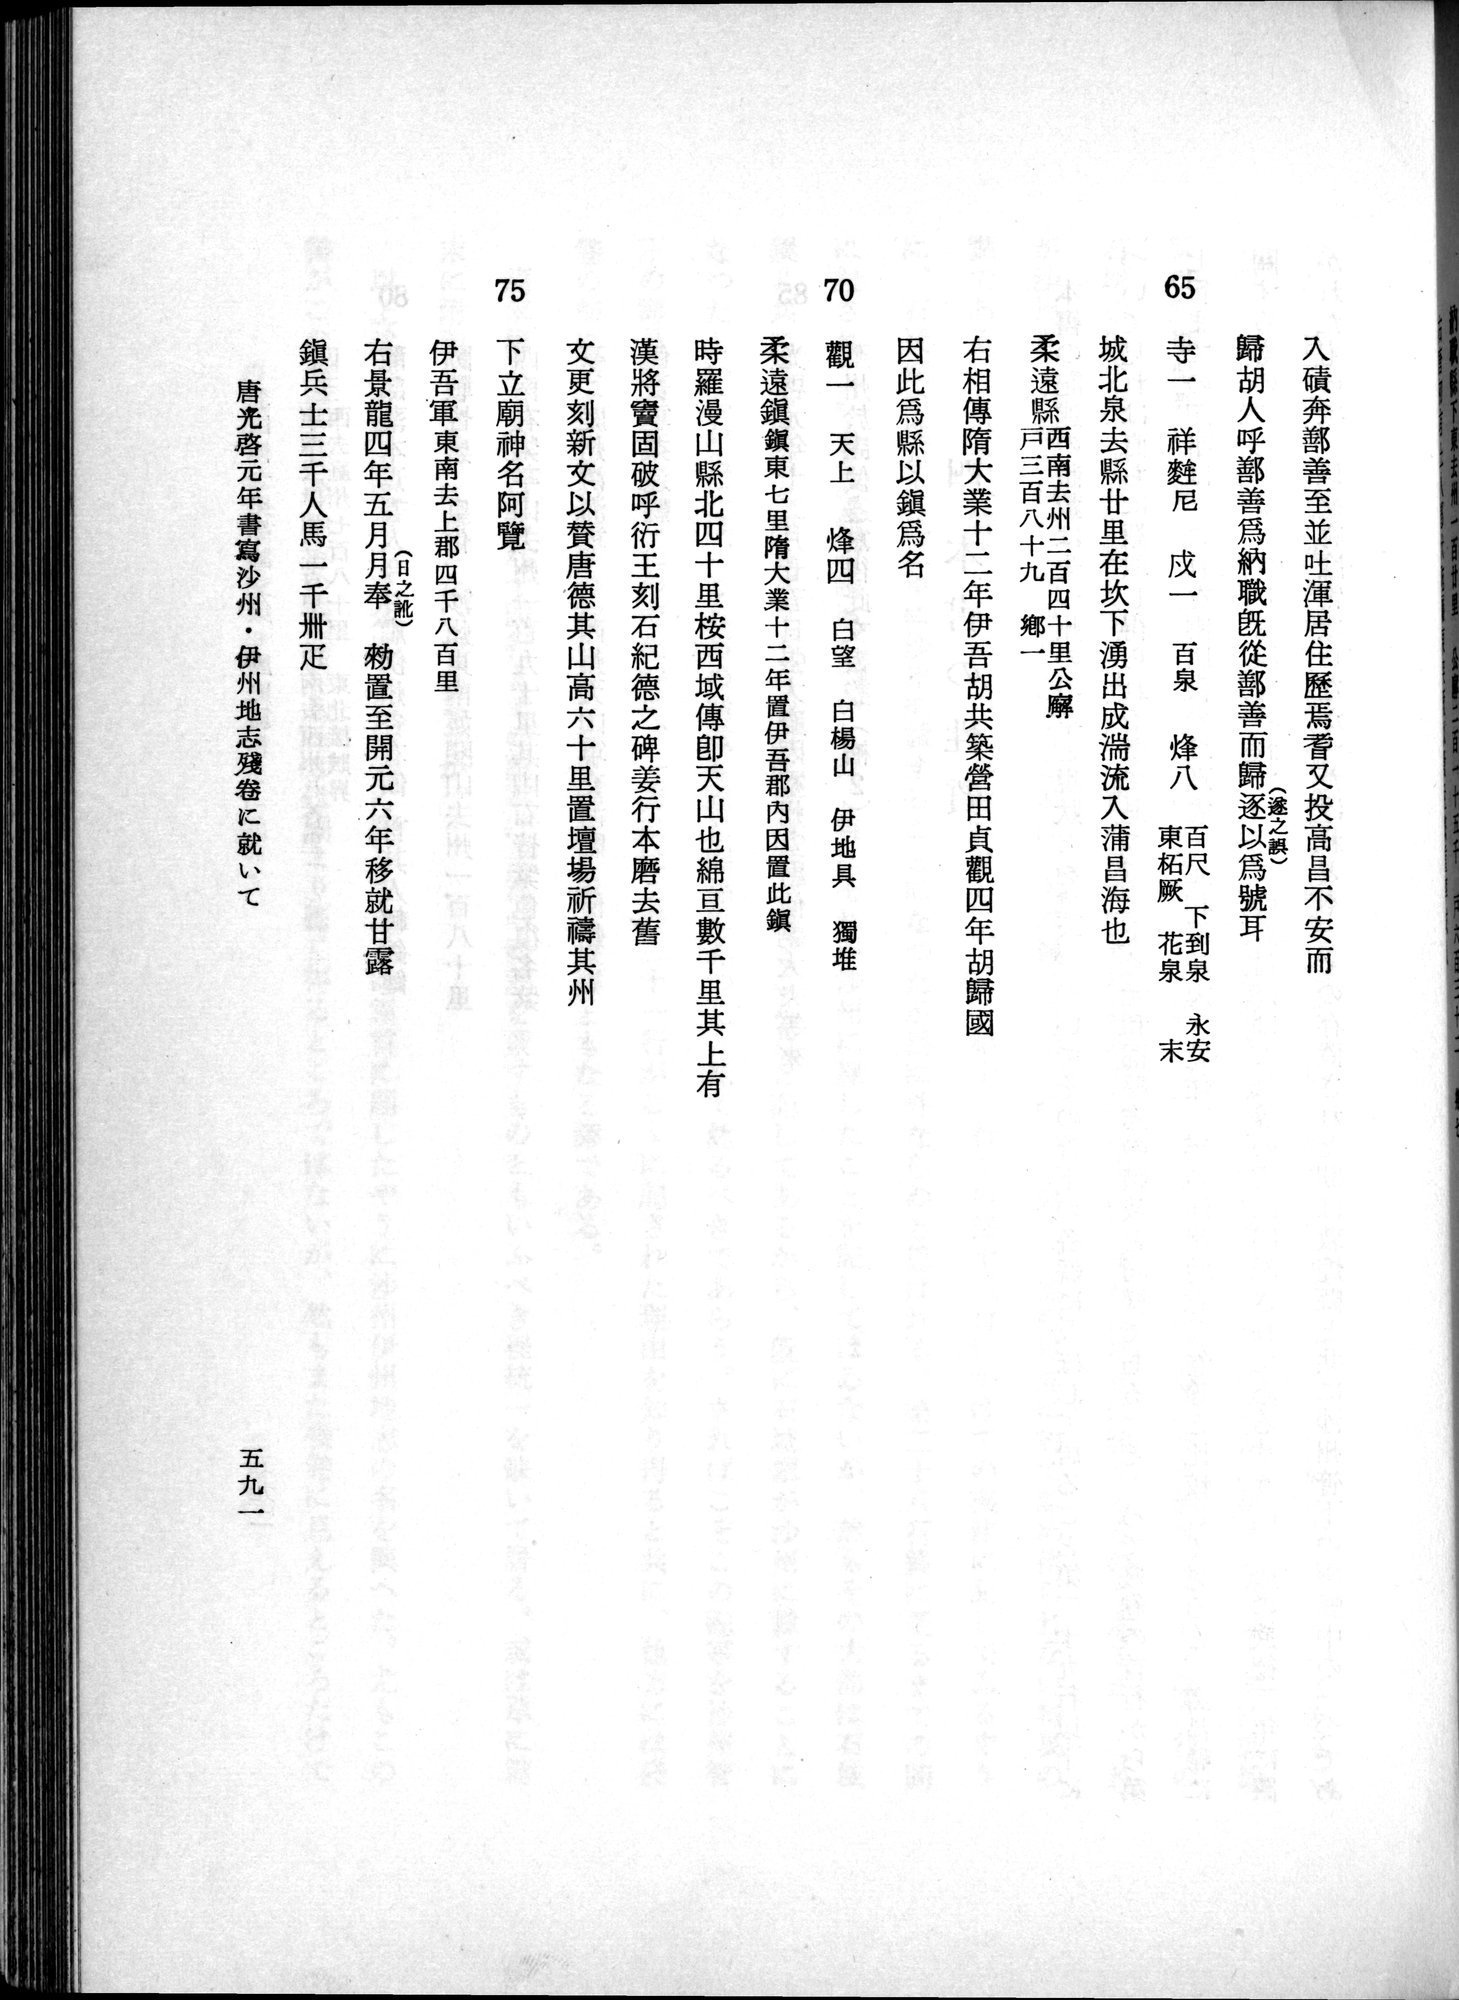 羽田博士史学論文集 : vol.1 / Page 629 (Grayscale High Resolution Image)